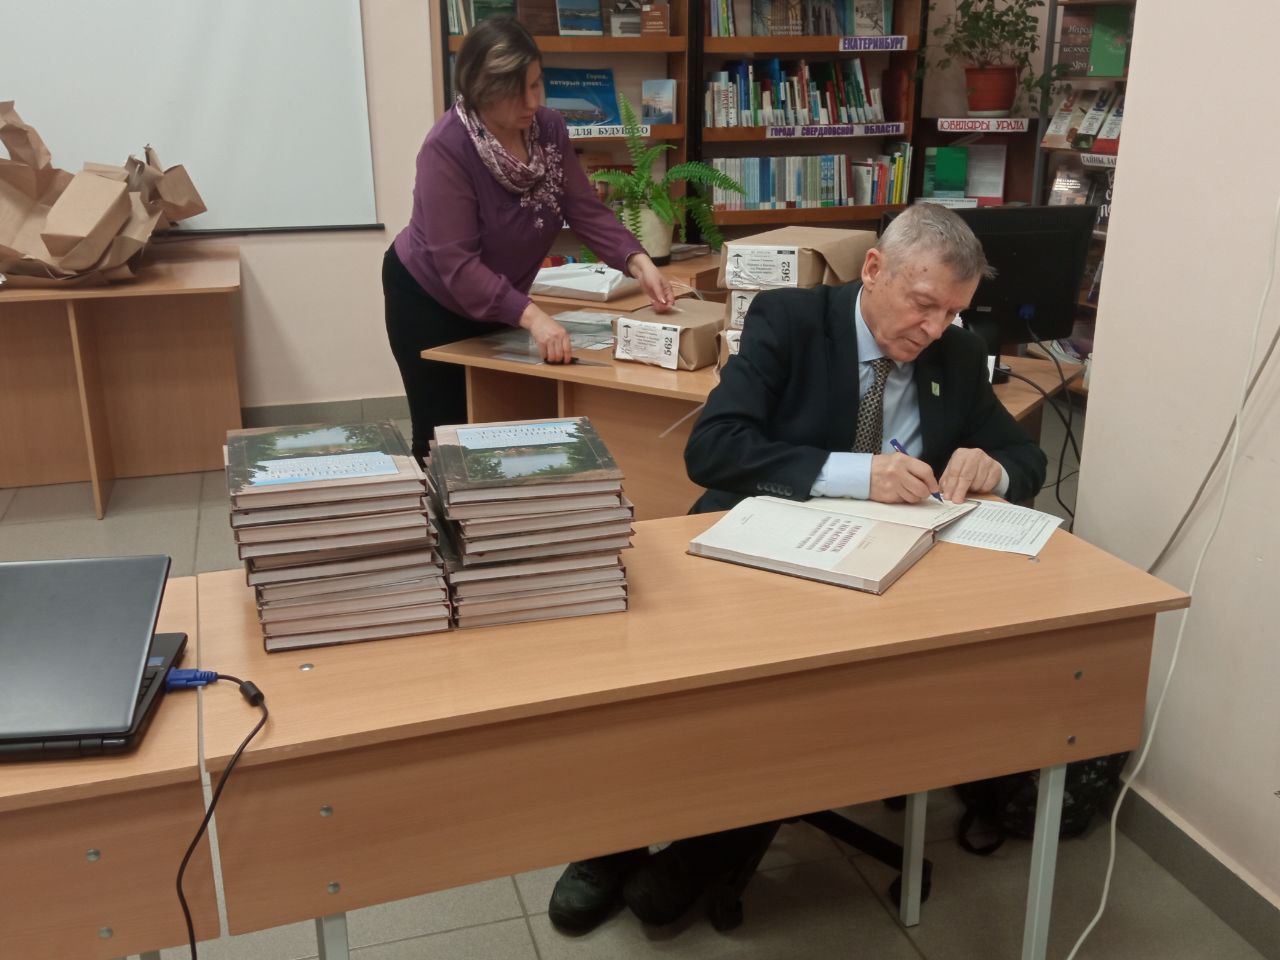 Сергей Новиков подписывает экземпляры своей книги для участников ее презентации. Фото из архива редакции